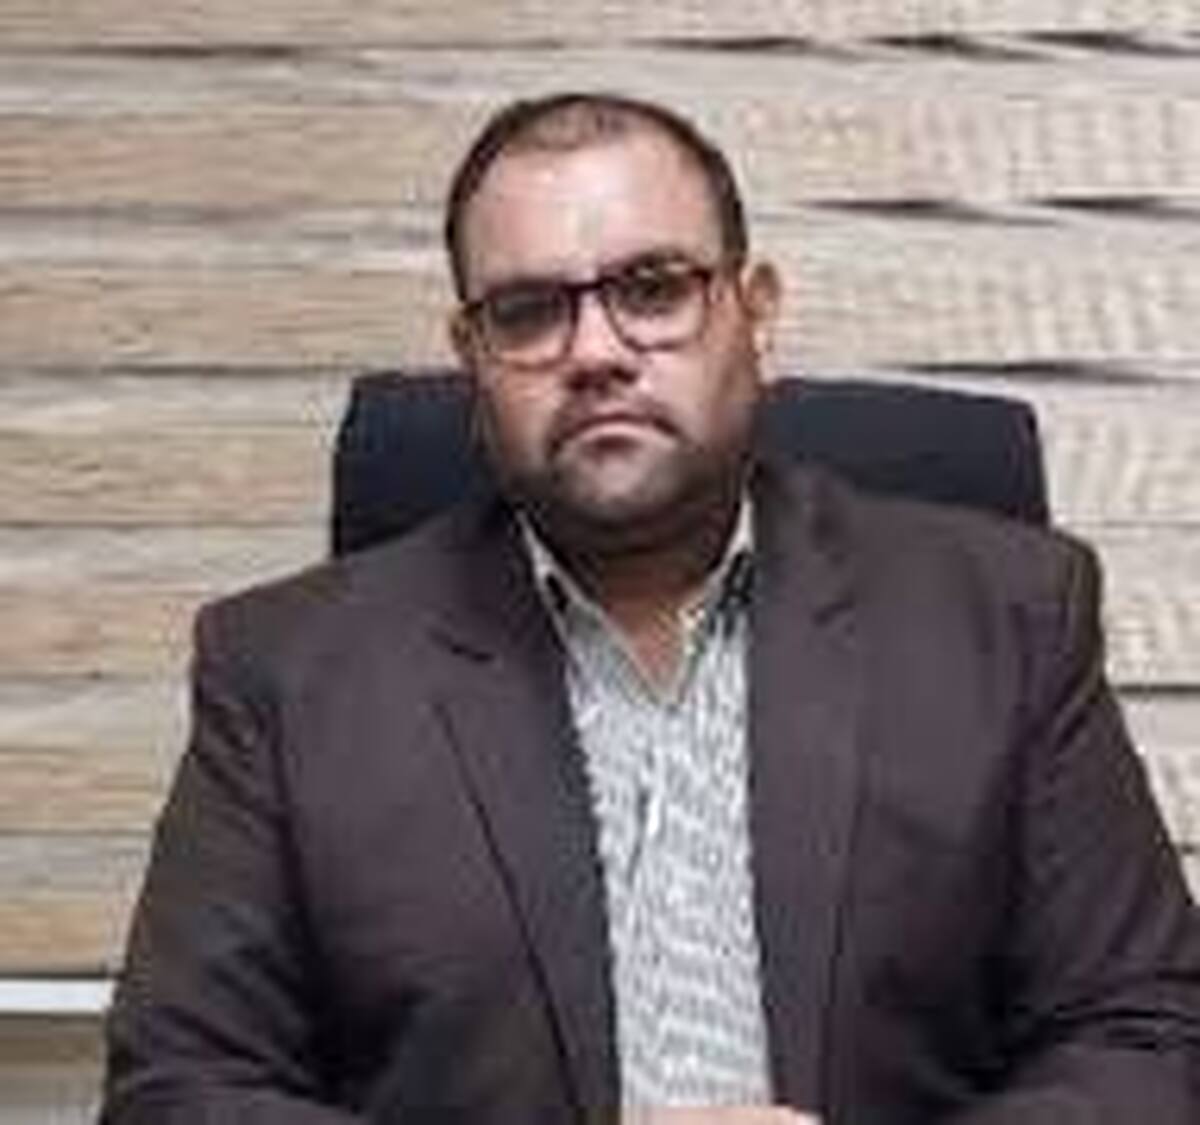 خرم آباد-جام جم آنلاین- مدیرعامل شرکت آبفا لرستان گفت: از ابتدای سال جاری تاکنون ۸۰۰۰ انشعاب غیرمجاز آب تبدیل به انشعاب مجاز شده است